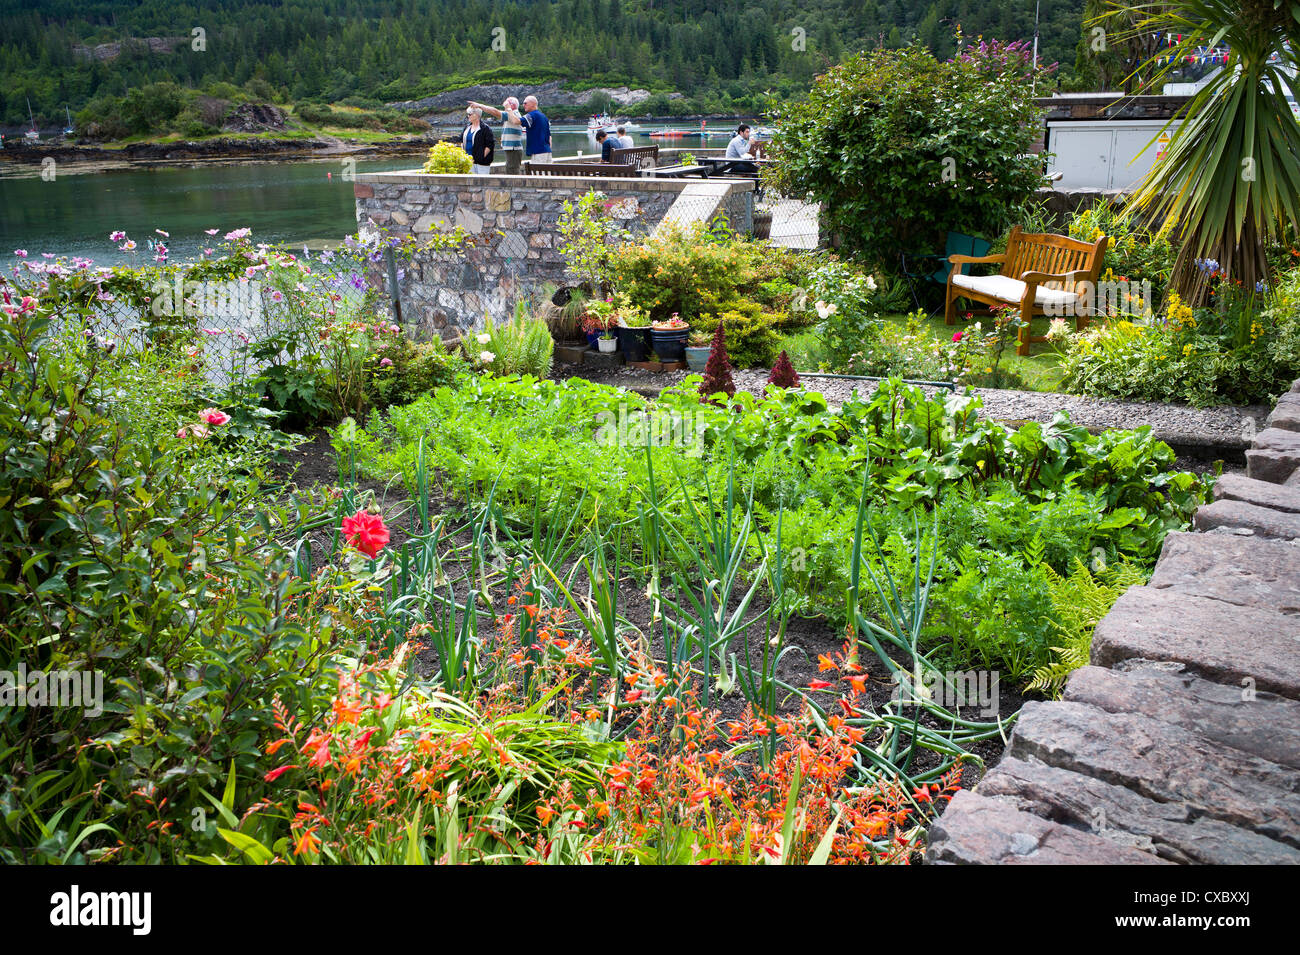 Am Meer kleinen Gemüsegarten Garten wachsen Blumen und Gemüse und eine kleine Liegewiese mit Sitz Stockfoto